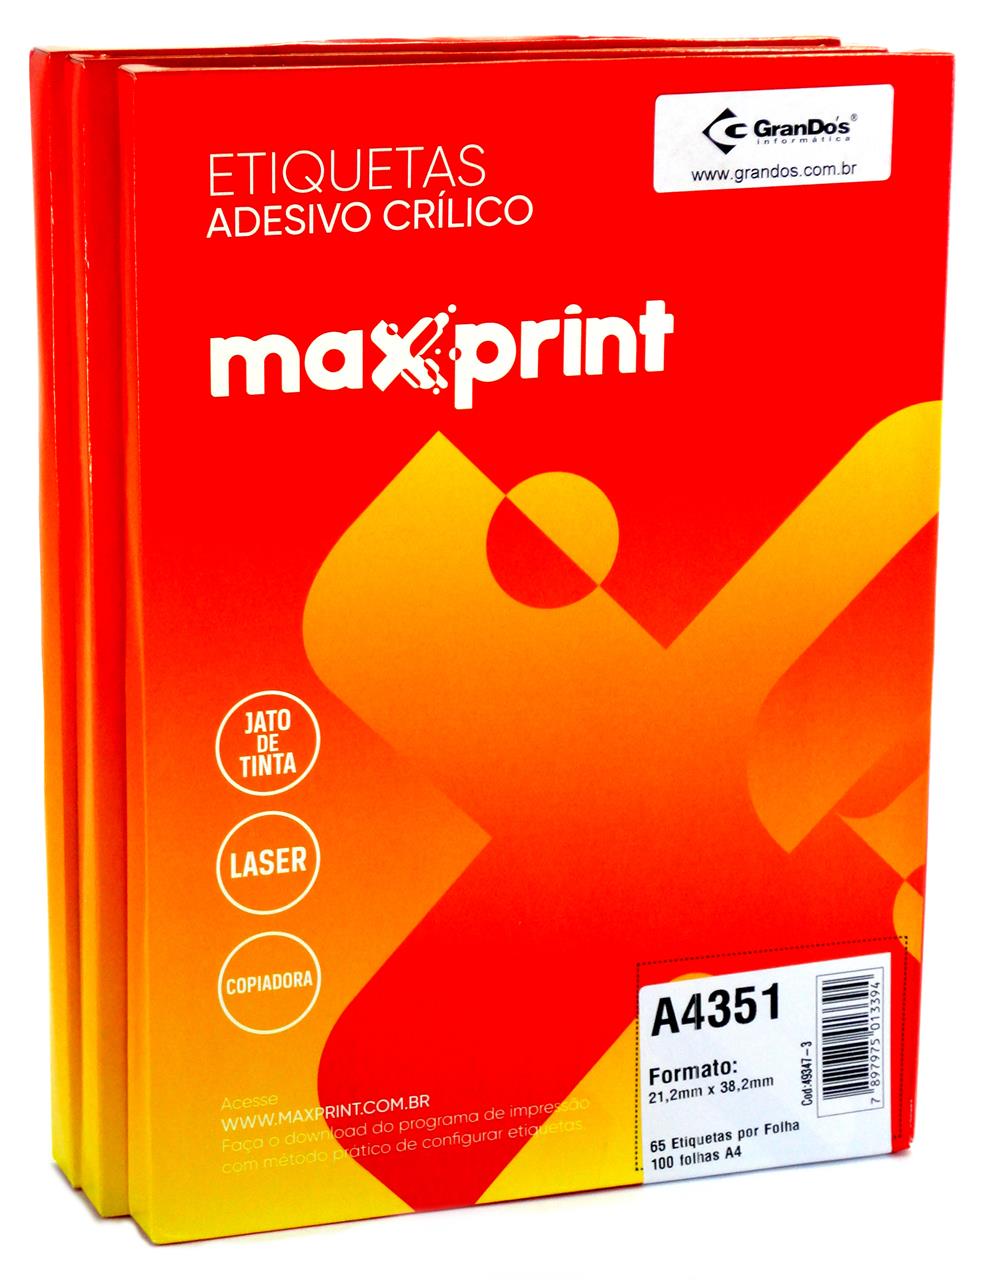 Etiquetas A4351 21,2mm x 38,2mm no Pack com 3 Caixas Maxprint